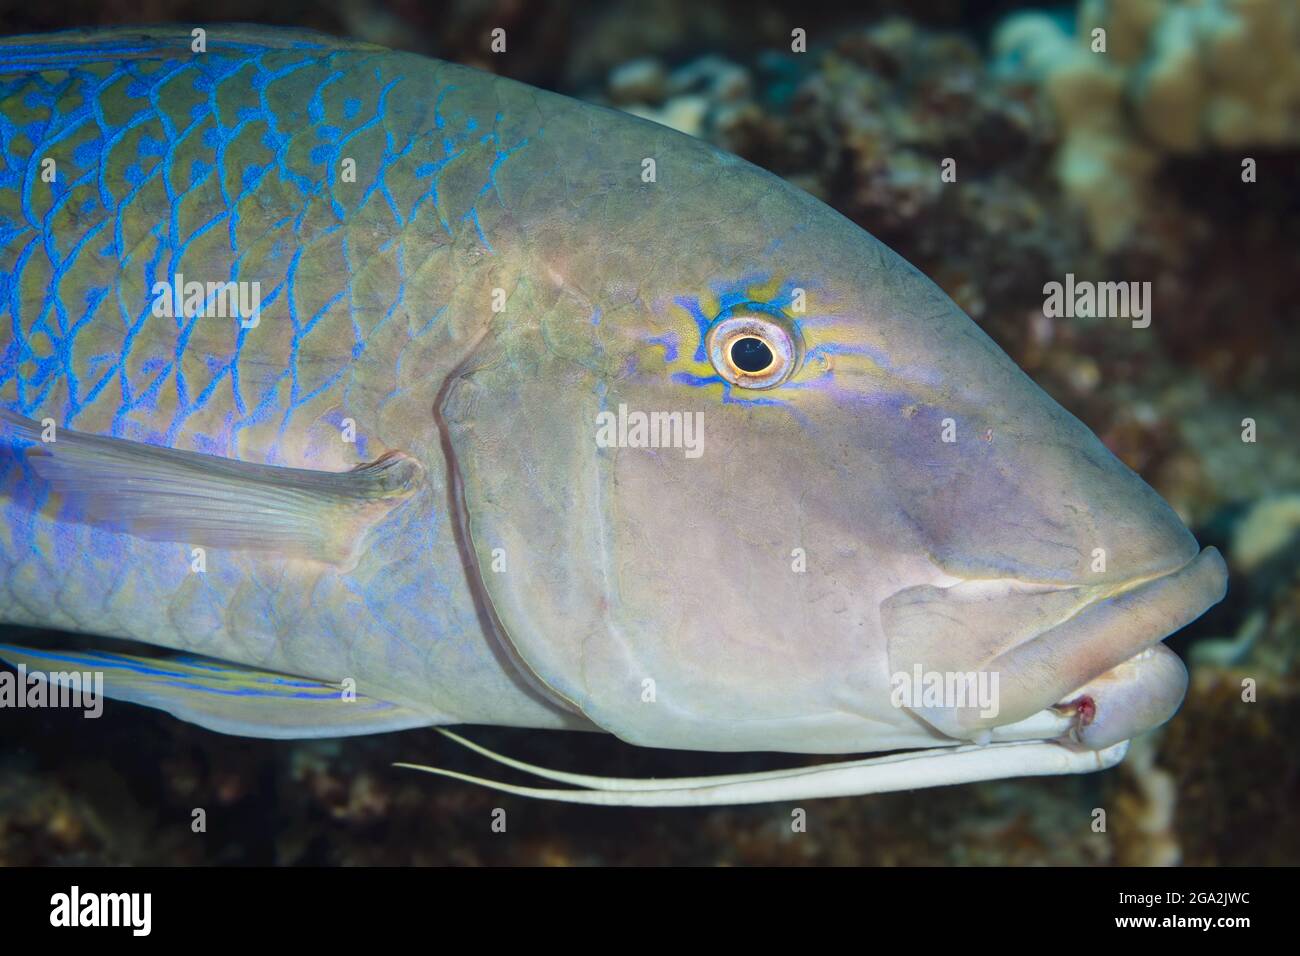 Nahaufnahme eines blauen Ziegenfisches (Parupeneus cyclostomus), der die beiden unter dem Kinn versteckten Barben zeigt, die zur Erkennung von Beute verwendet werden Stockfoto